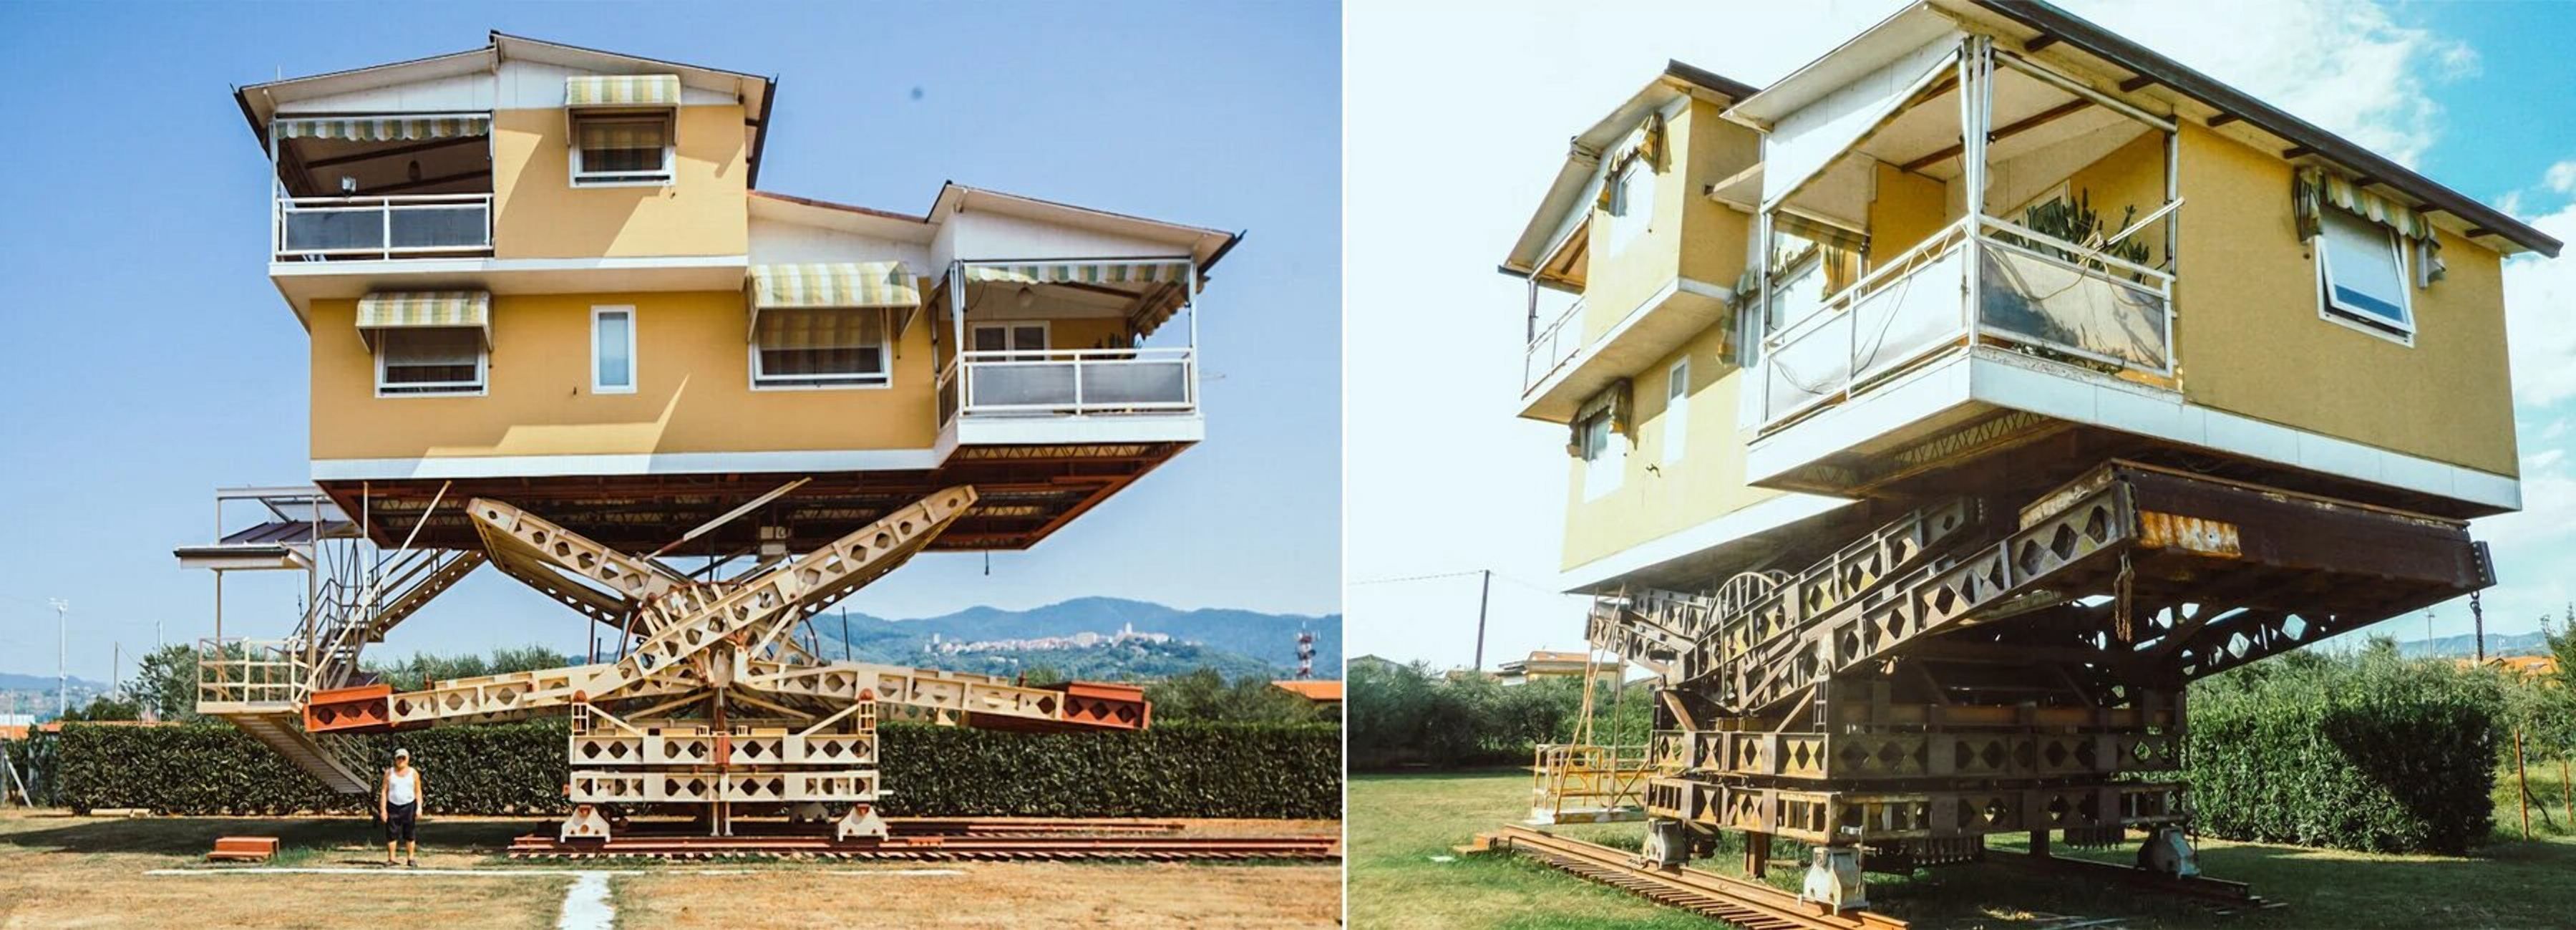 Витающий в воздухе: как выглядит летучий дом в Италии 